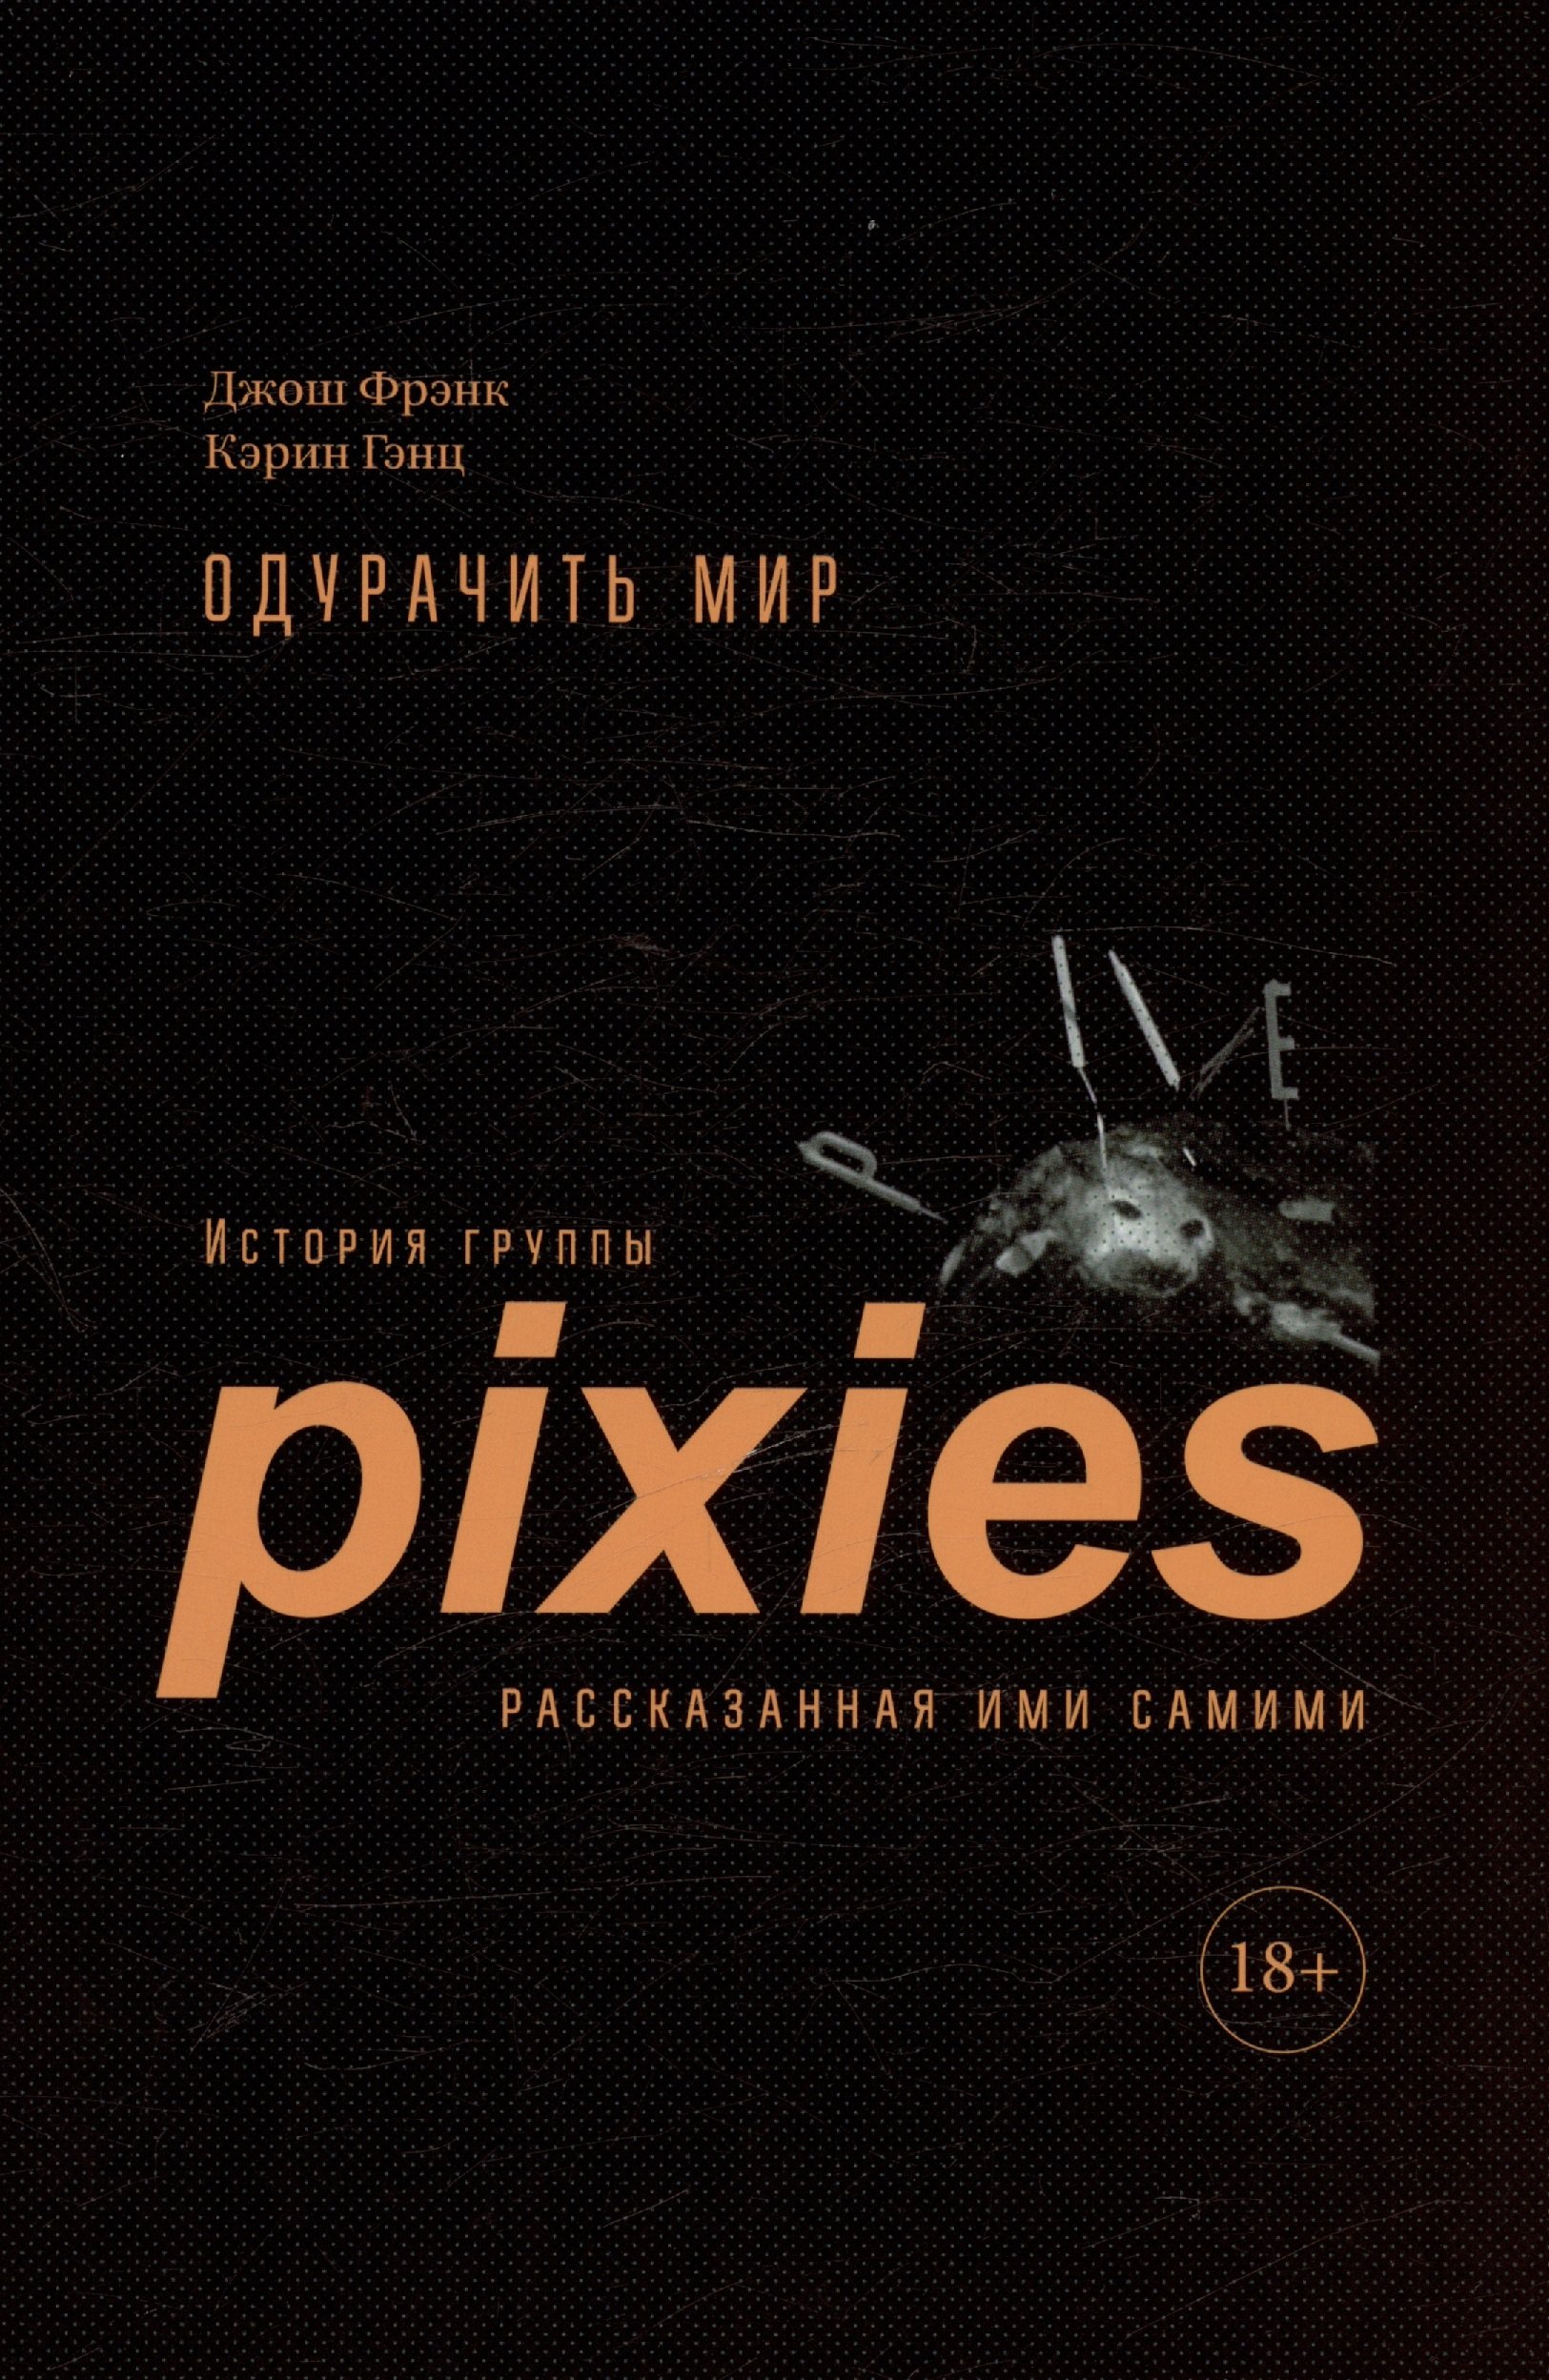 

Одурачить мир. История группы Pixies, рассказанная ими самими